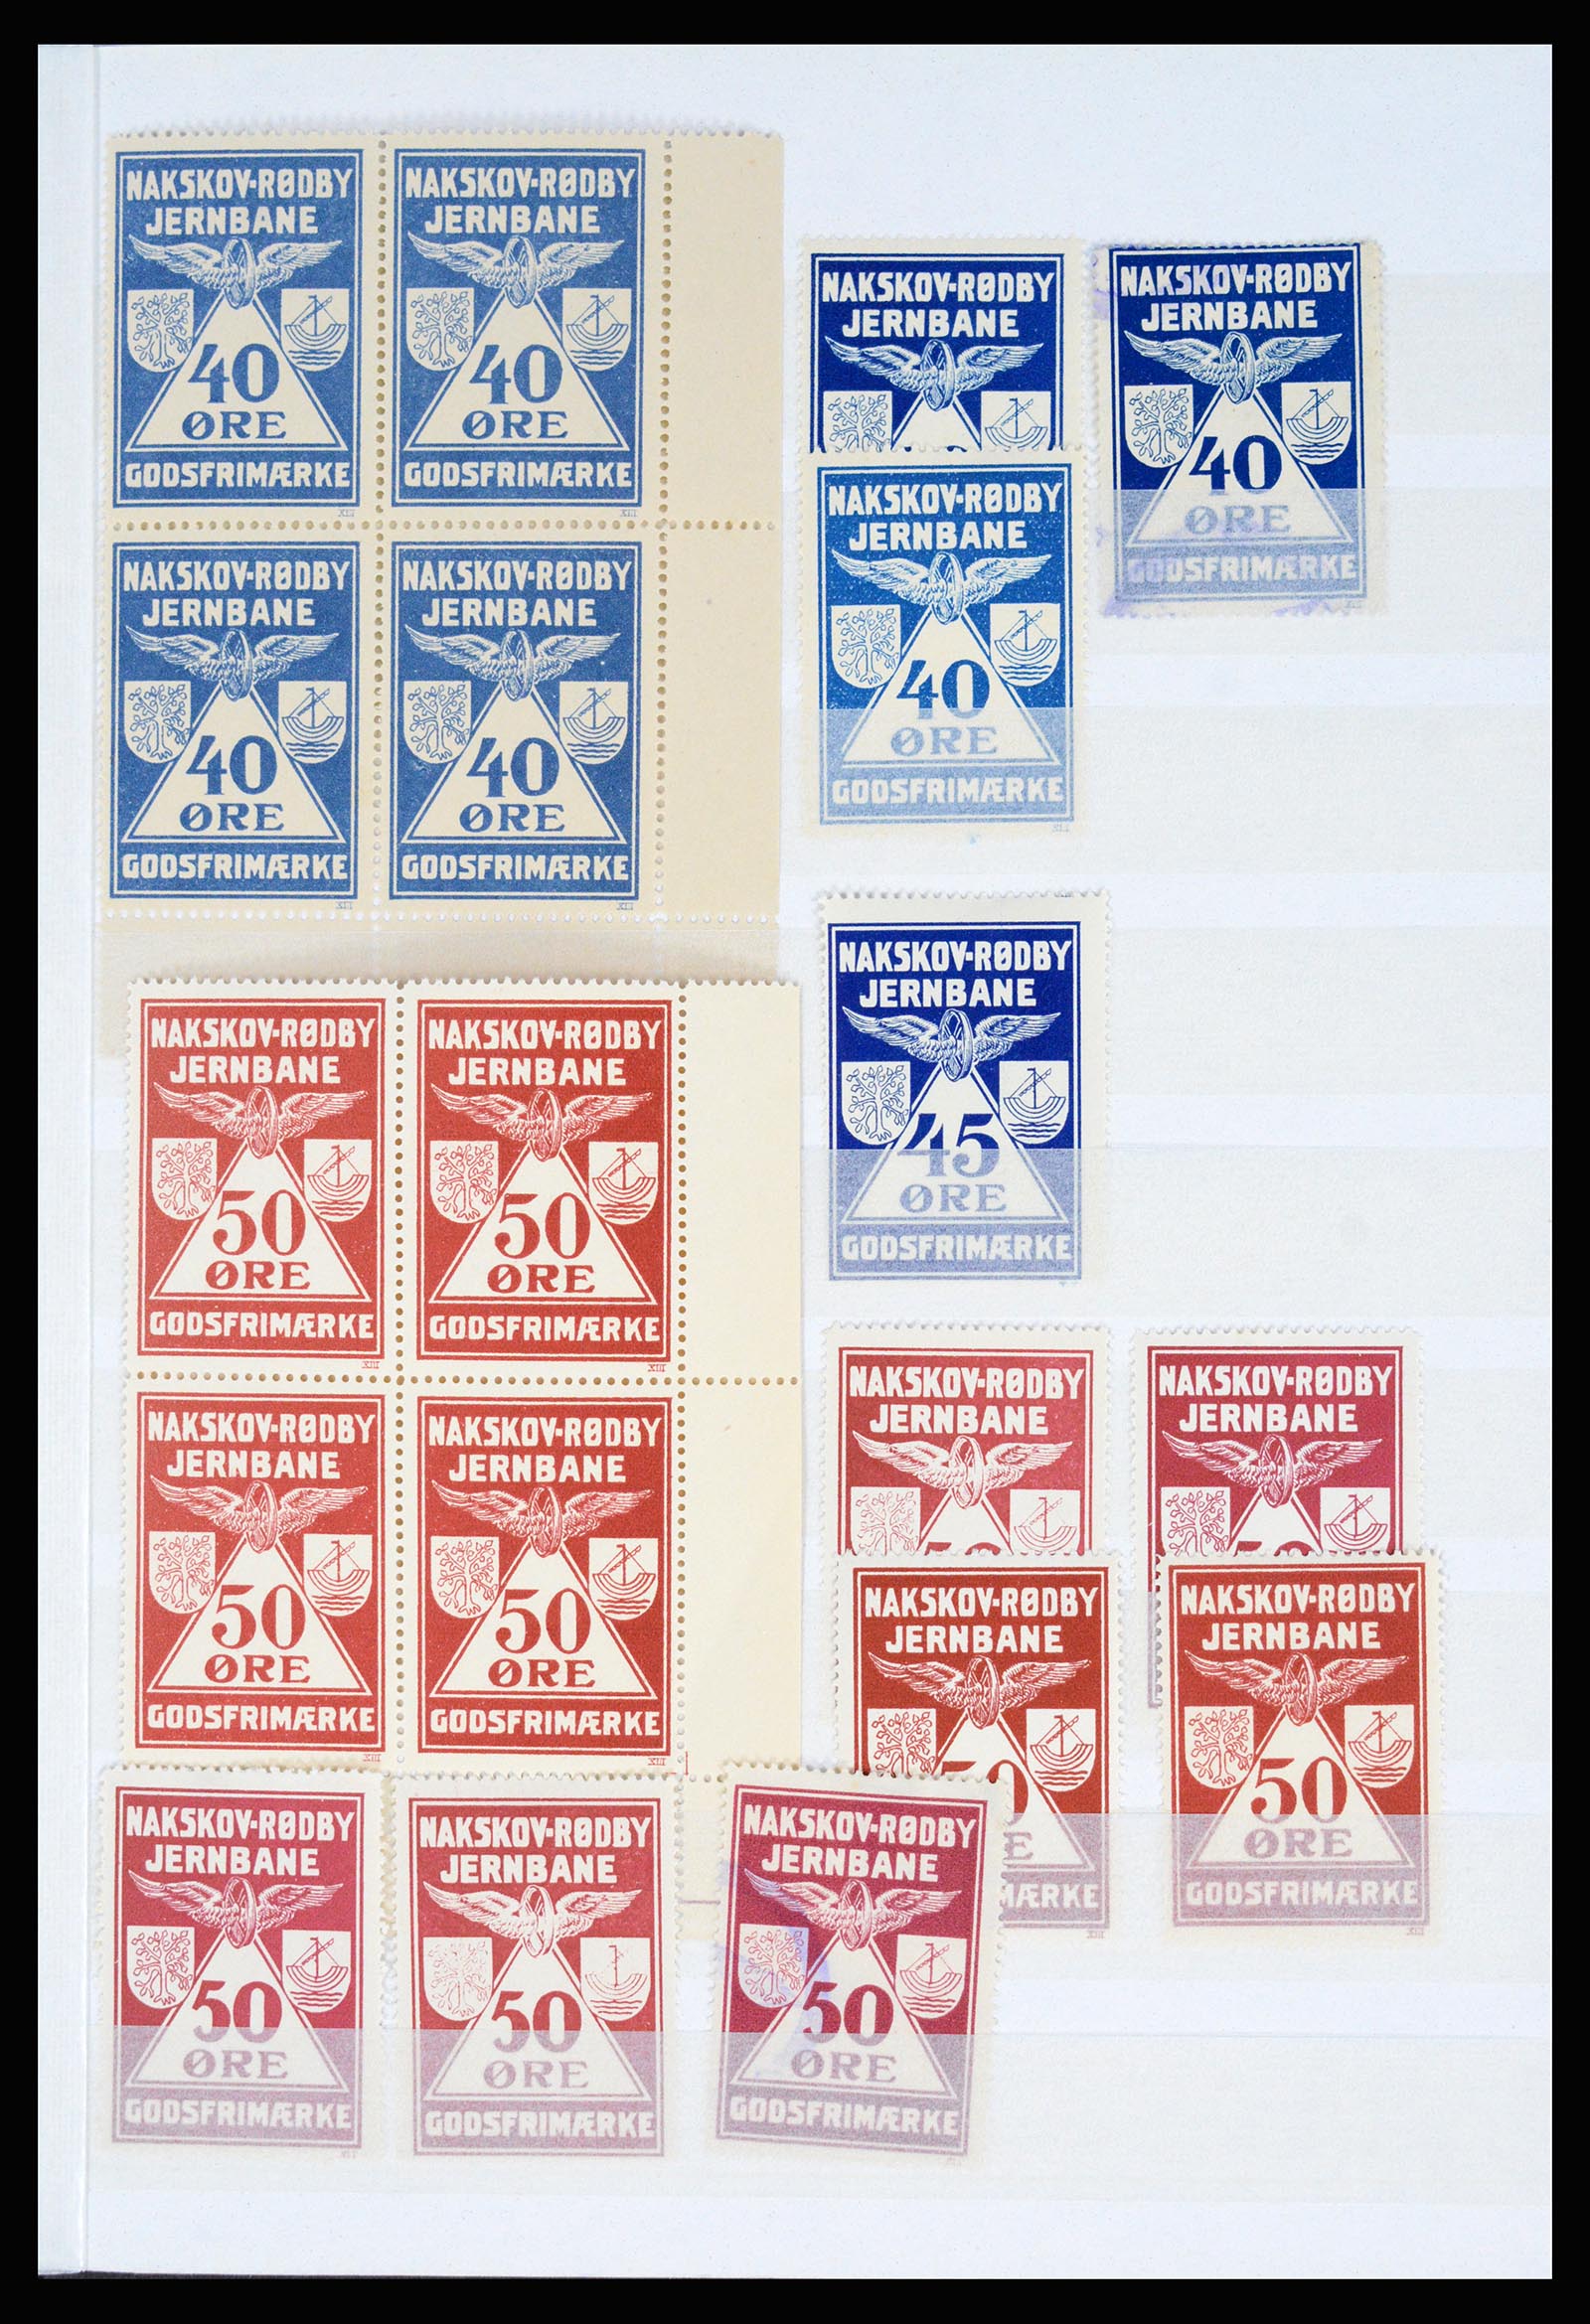 36982 102 - Postzegelverzameling 36982 Denemarken spoorwegzegels.